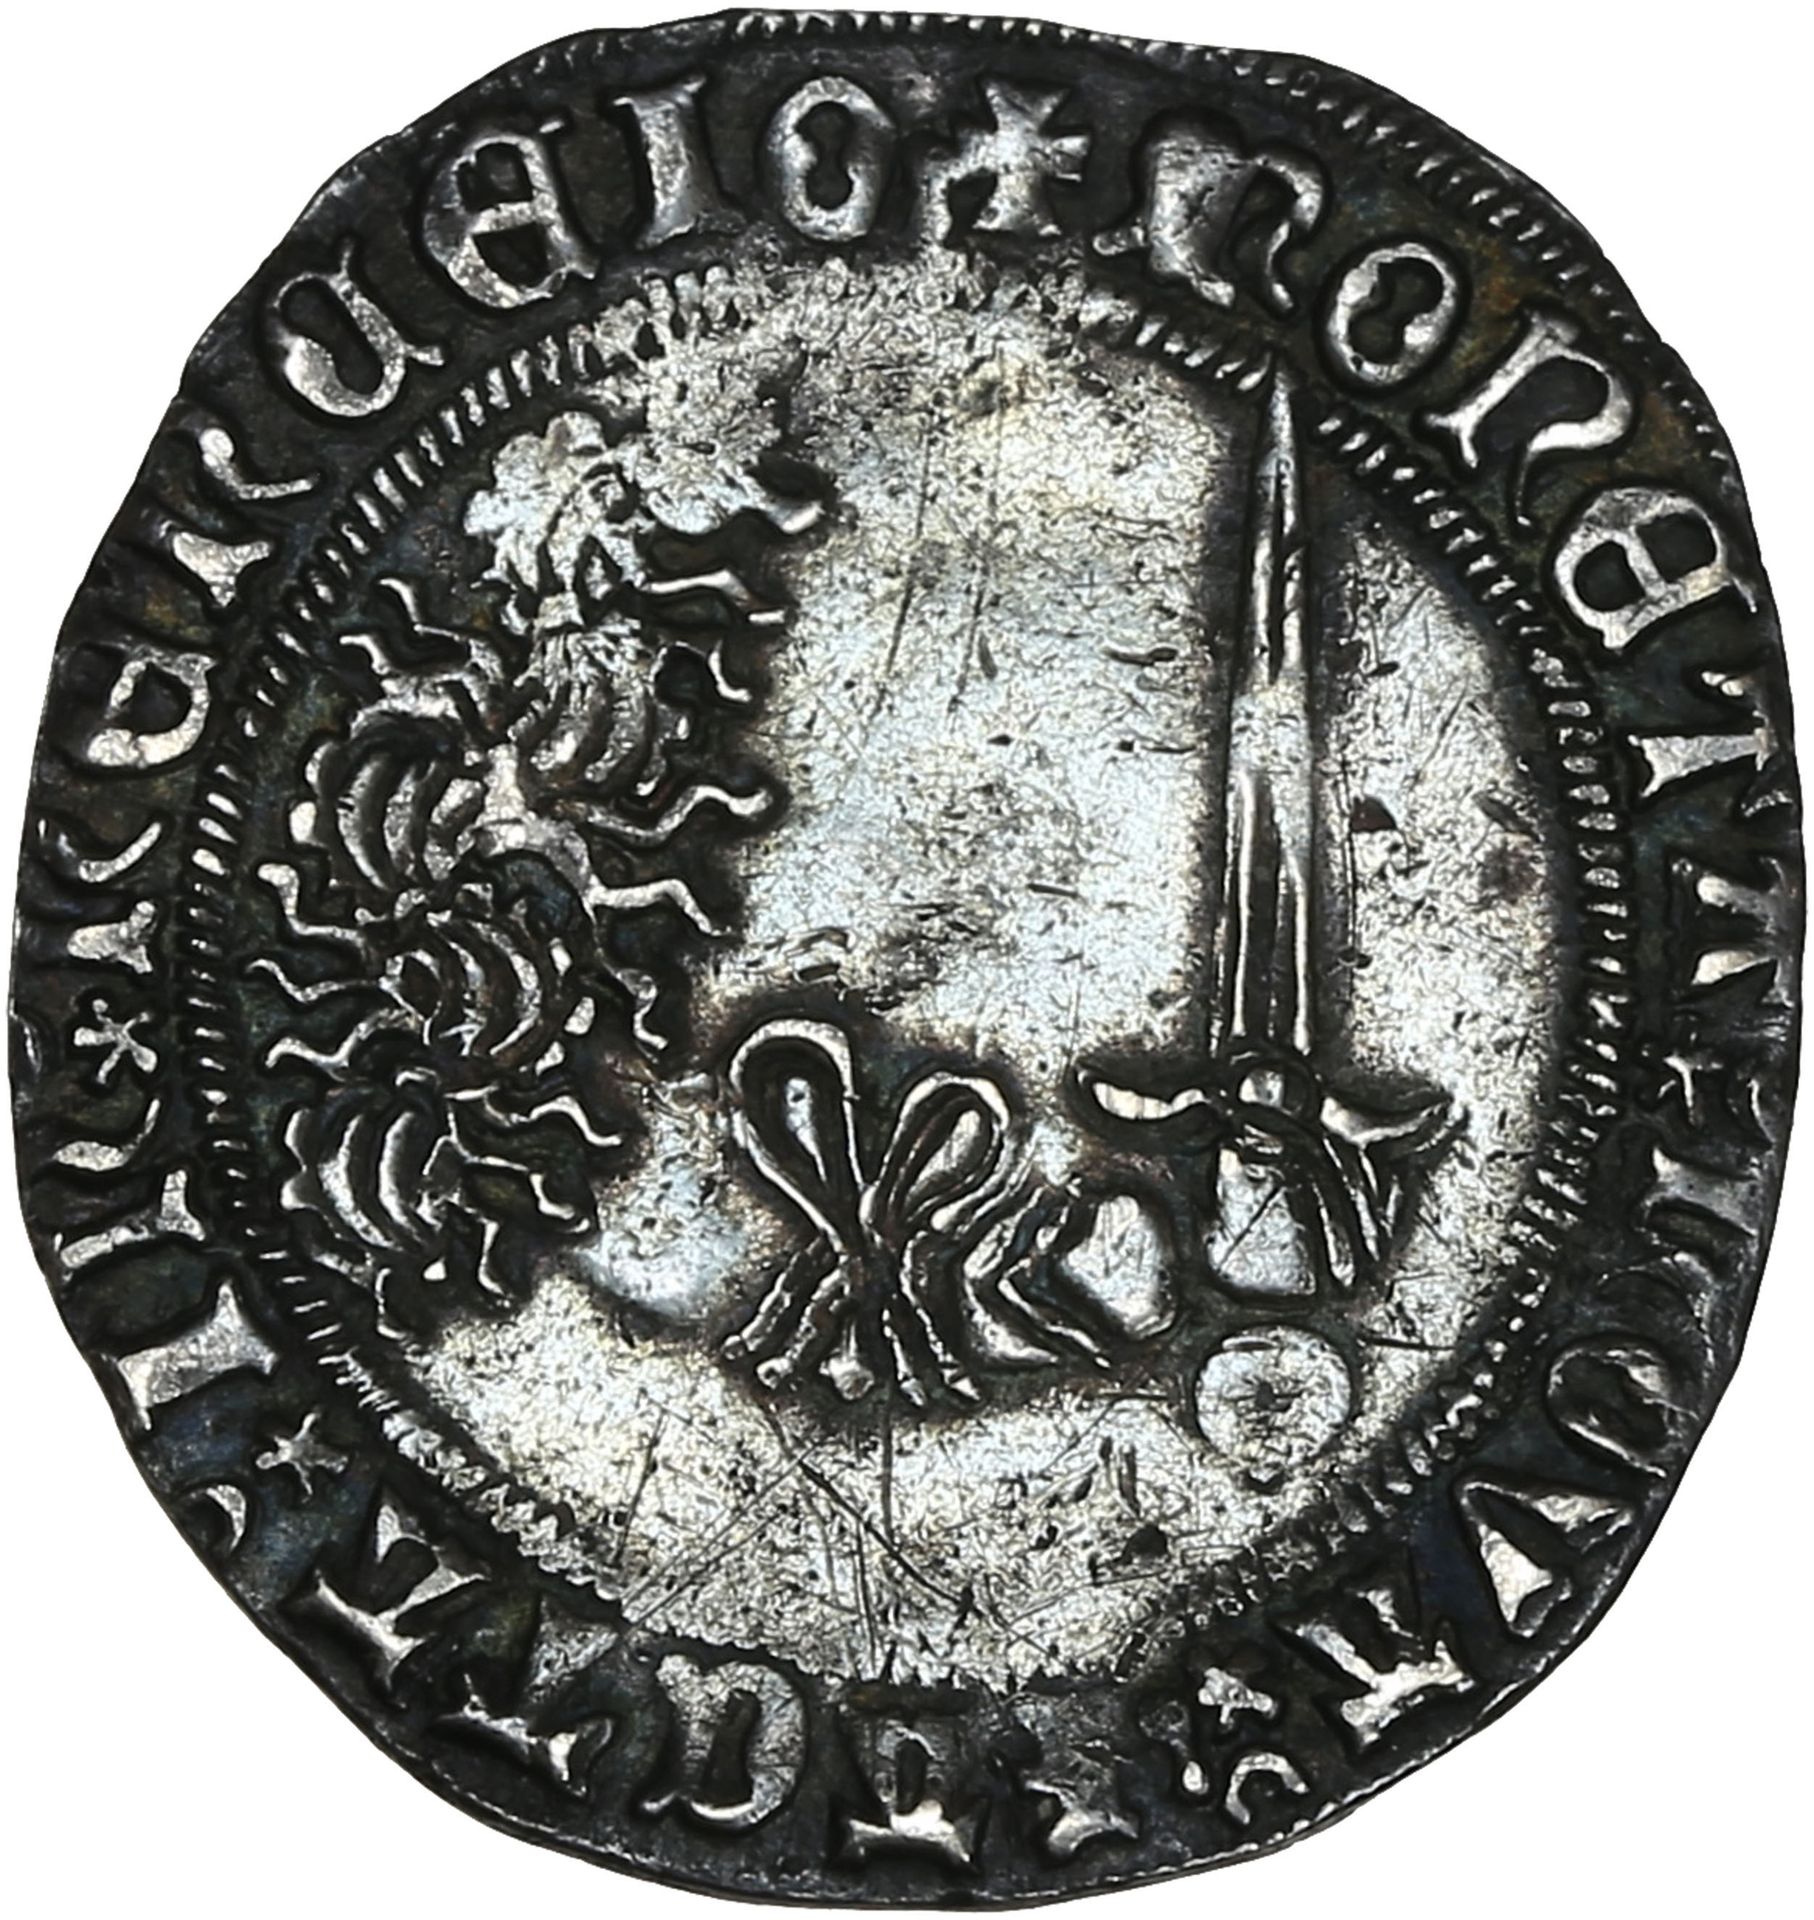 Null DUCHÉ de LORRAINE :
Charles II (1390-1431) : gros de Nancy.
René de Vaudemo&hellip;